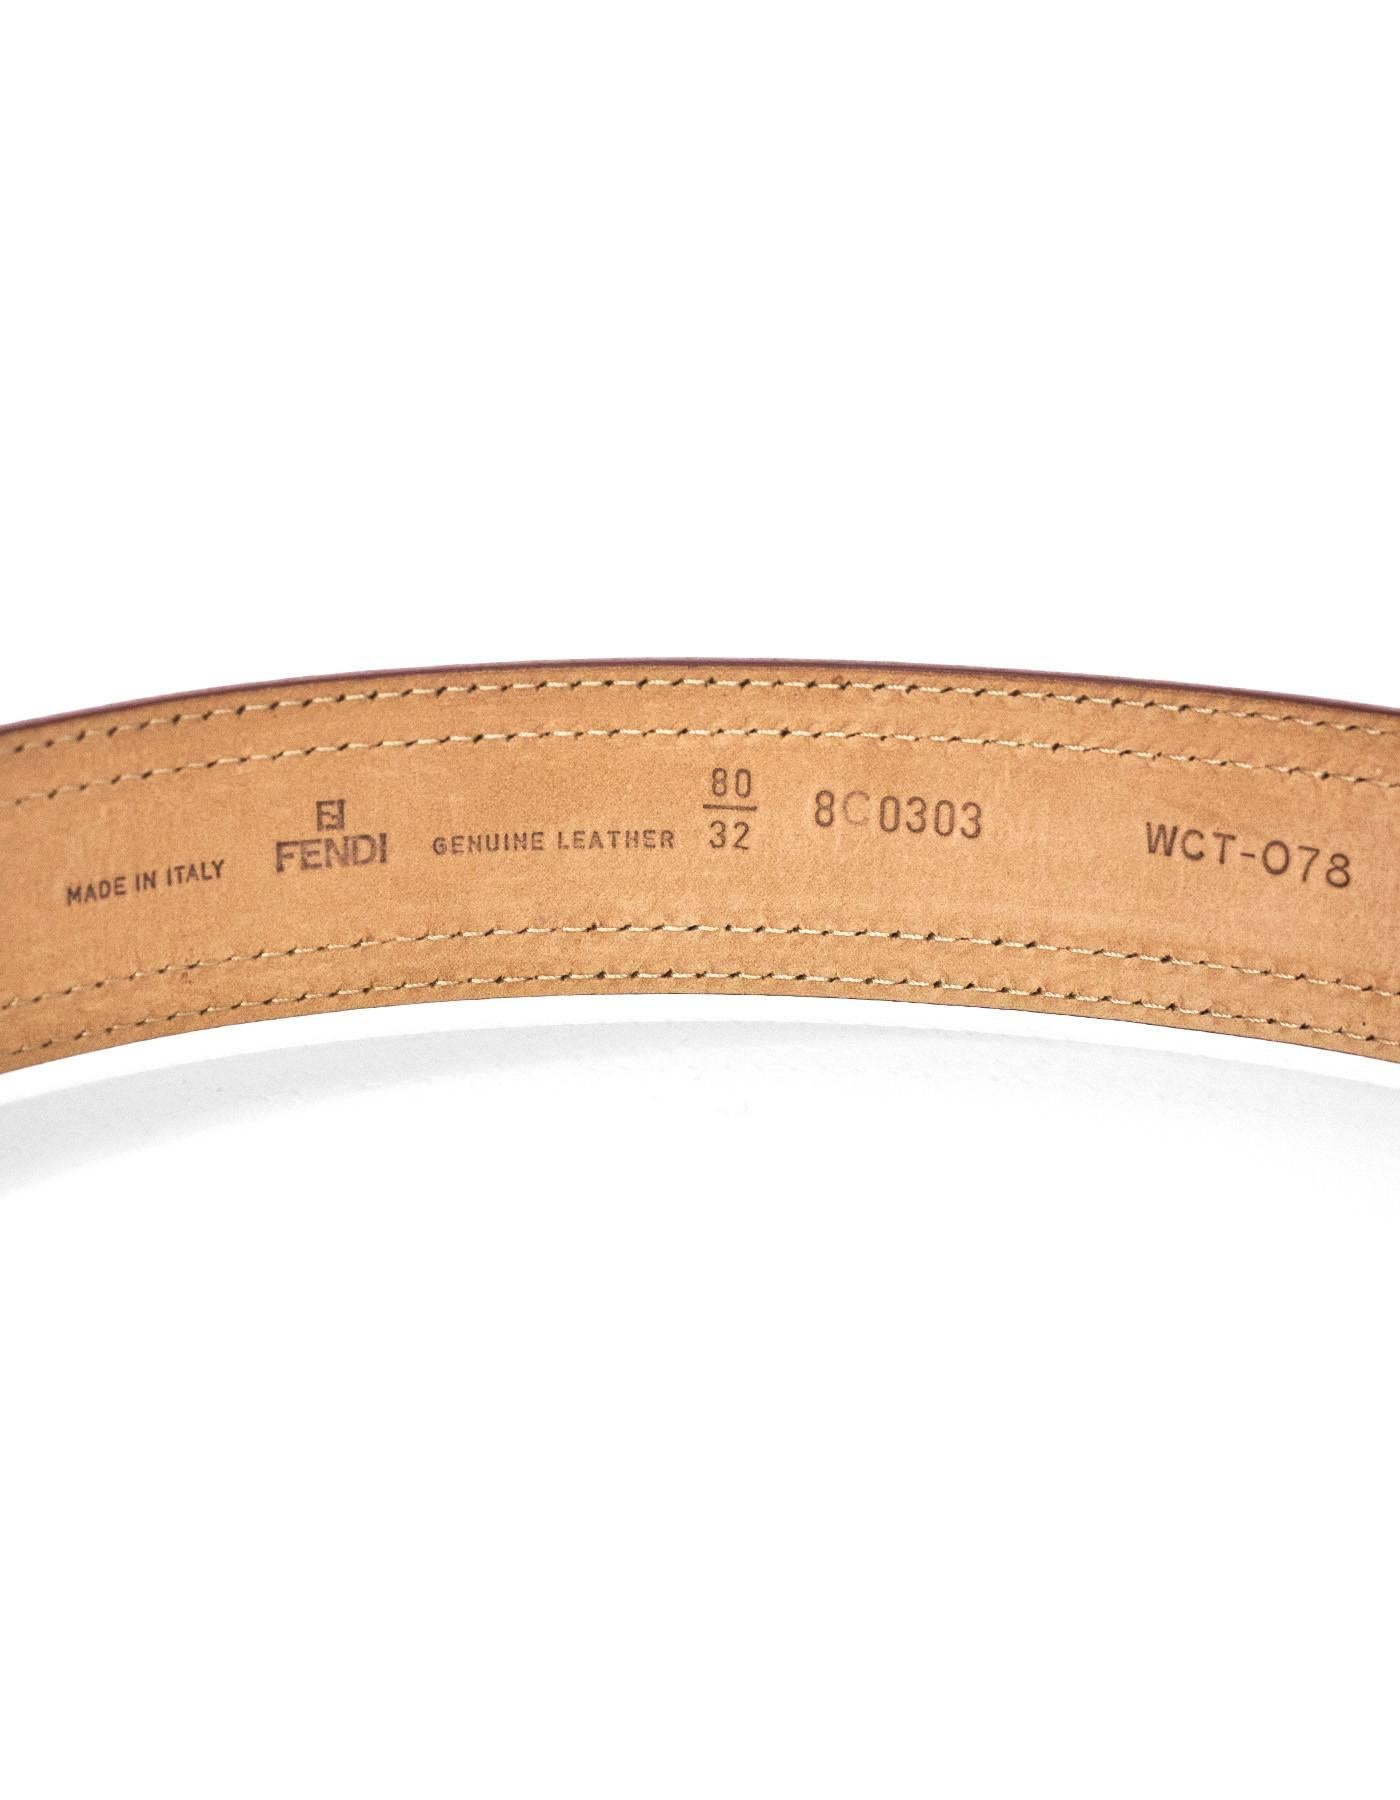 Women's Fendi Brown Patent Leather & Wicker Belt sz 80